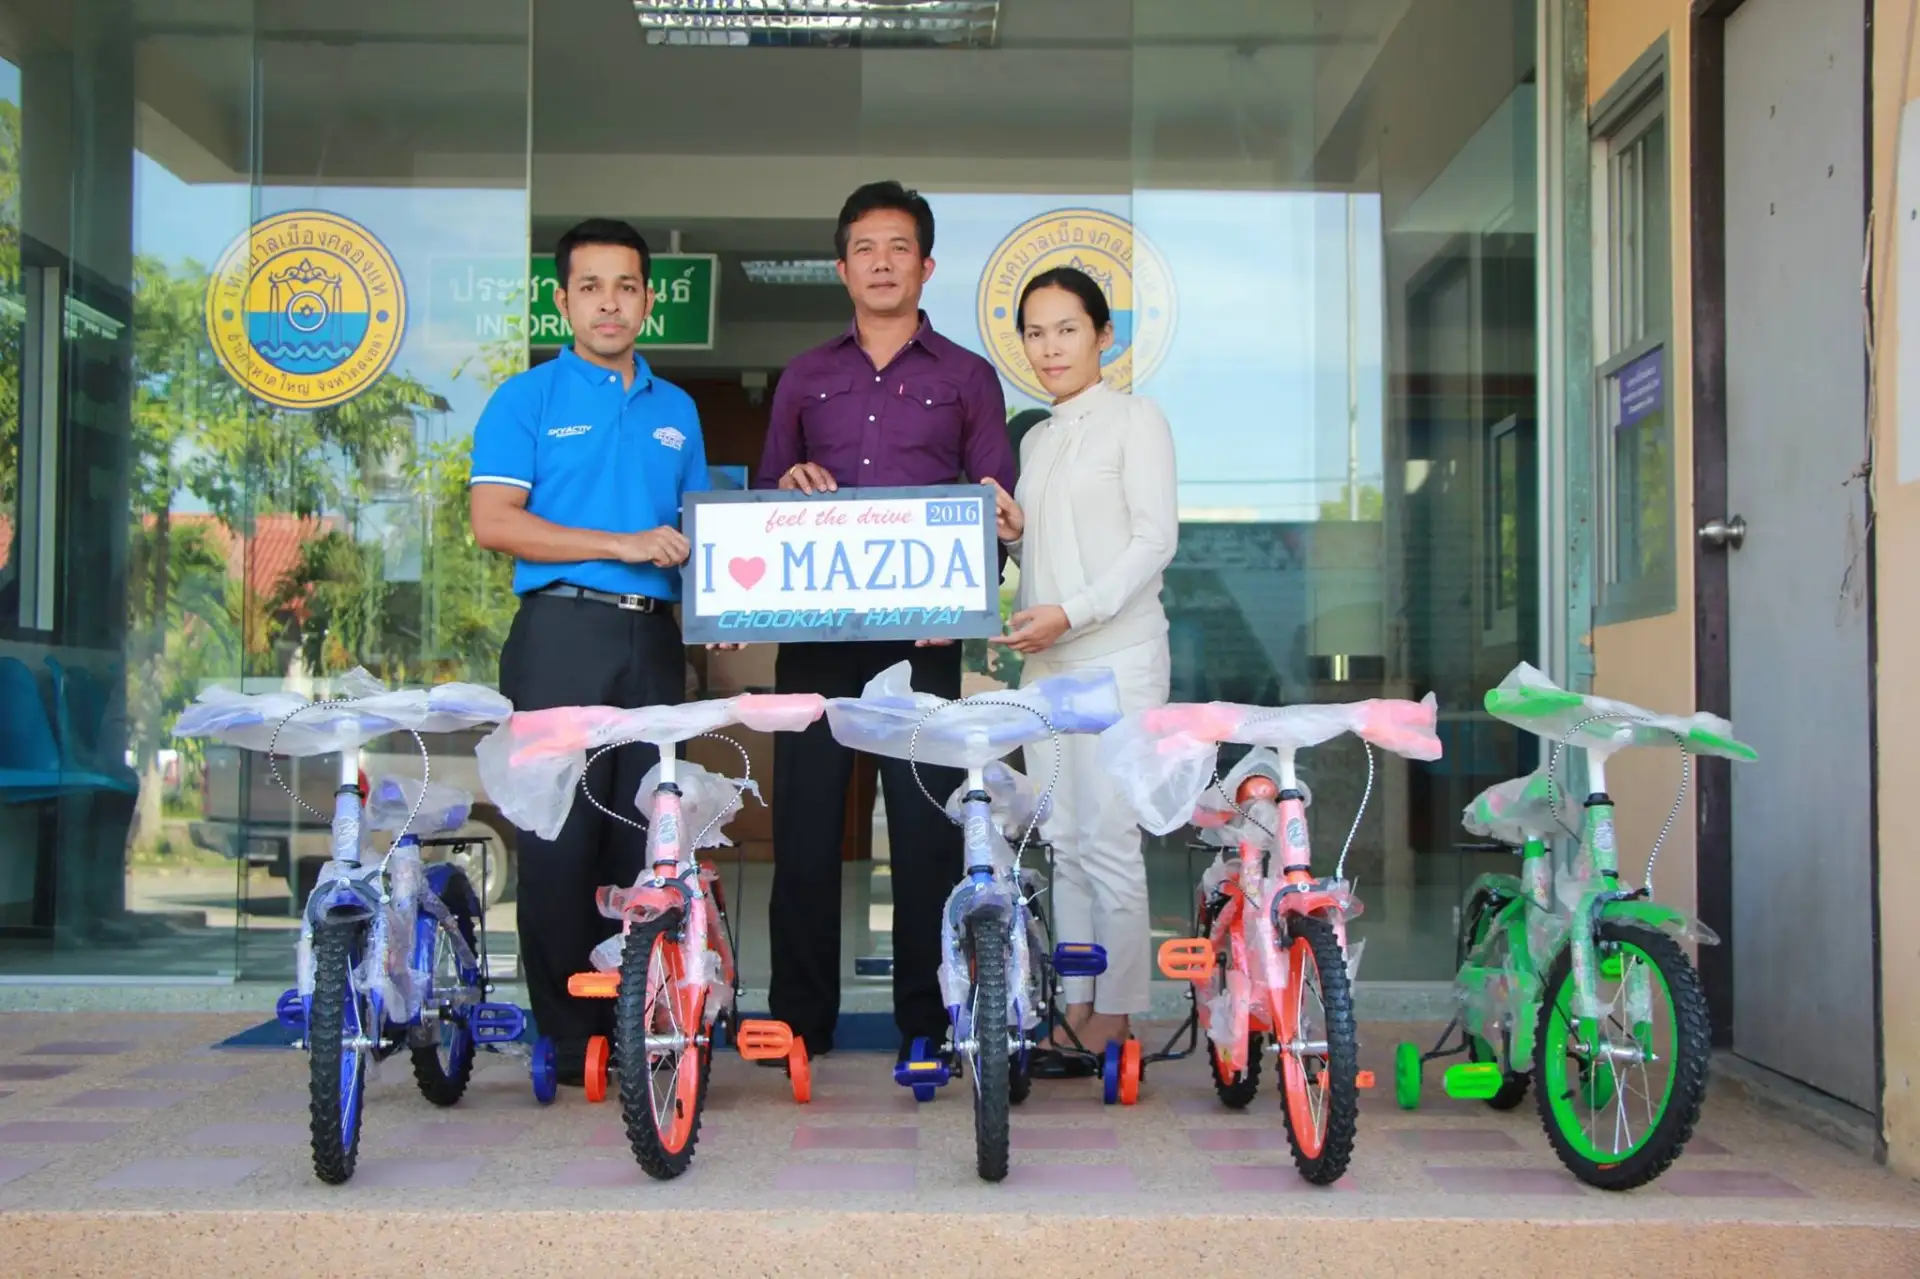 มาสด้าชูเกียรติยนต์ มอบรถจักรยาน 5 คันสนับสนุนงานวันเด็กเทศบาลเมืองคลองแห